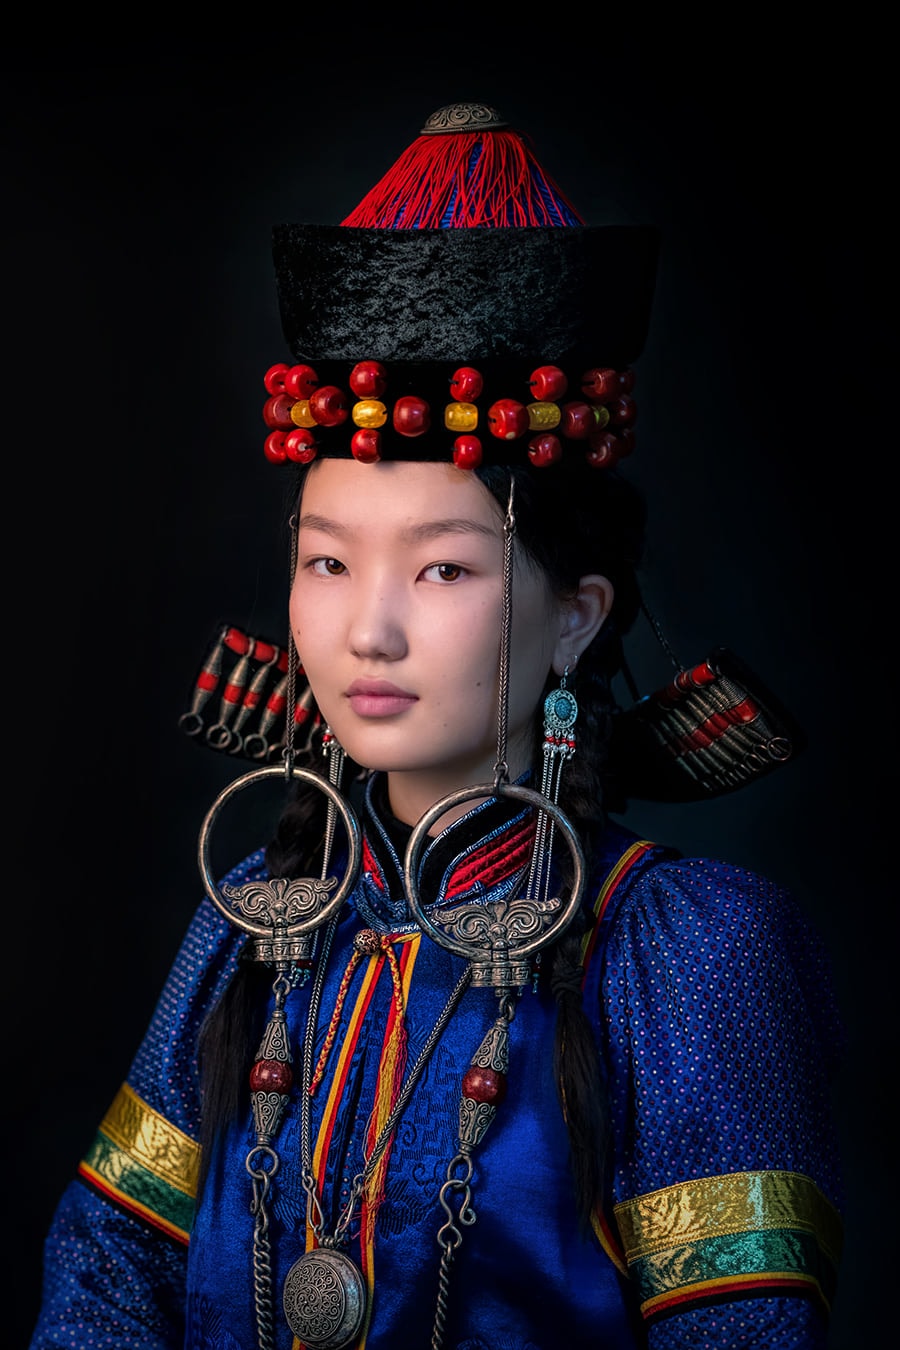 17 представителей коренных народностей Сибири: фотосессия в национальных костюмах 54